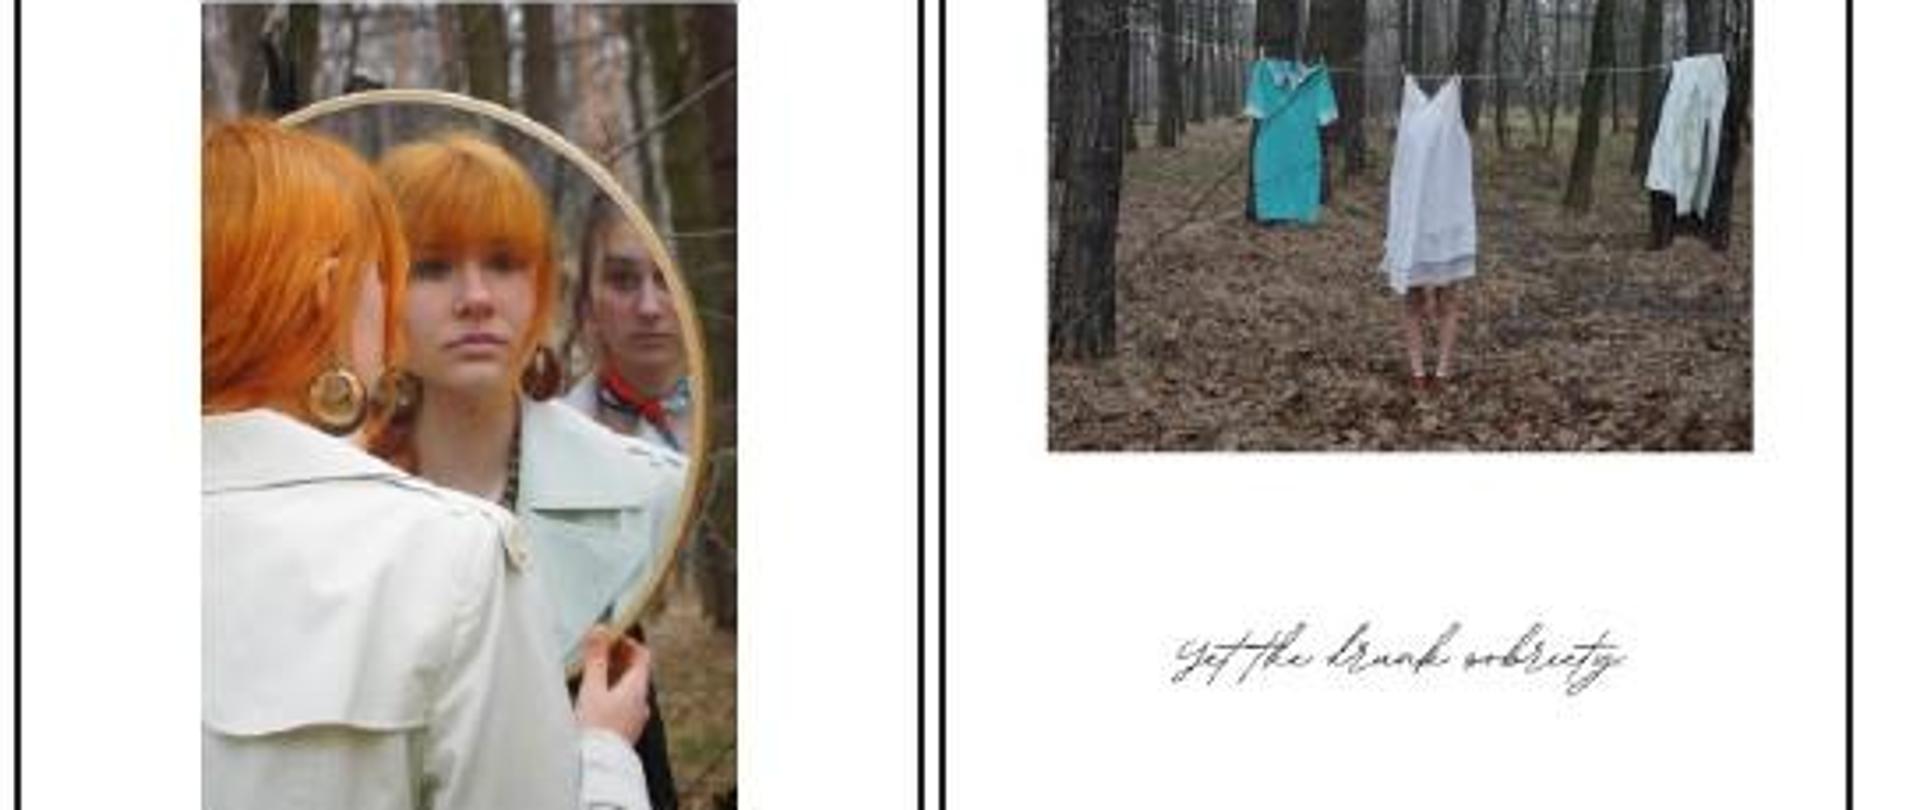 Cztery zdjęcia przedstawiające osoby i przedmioty w lesie